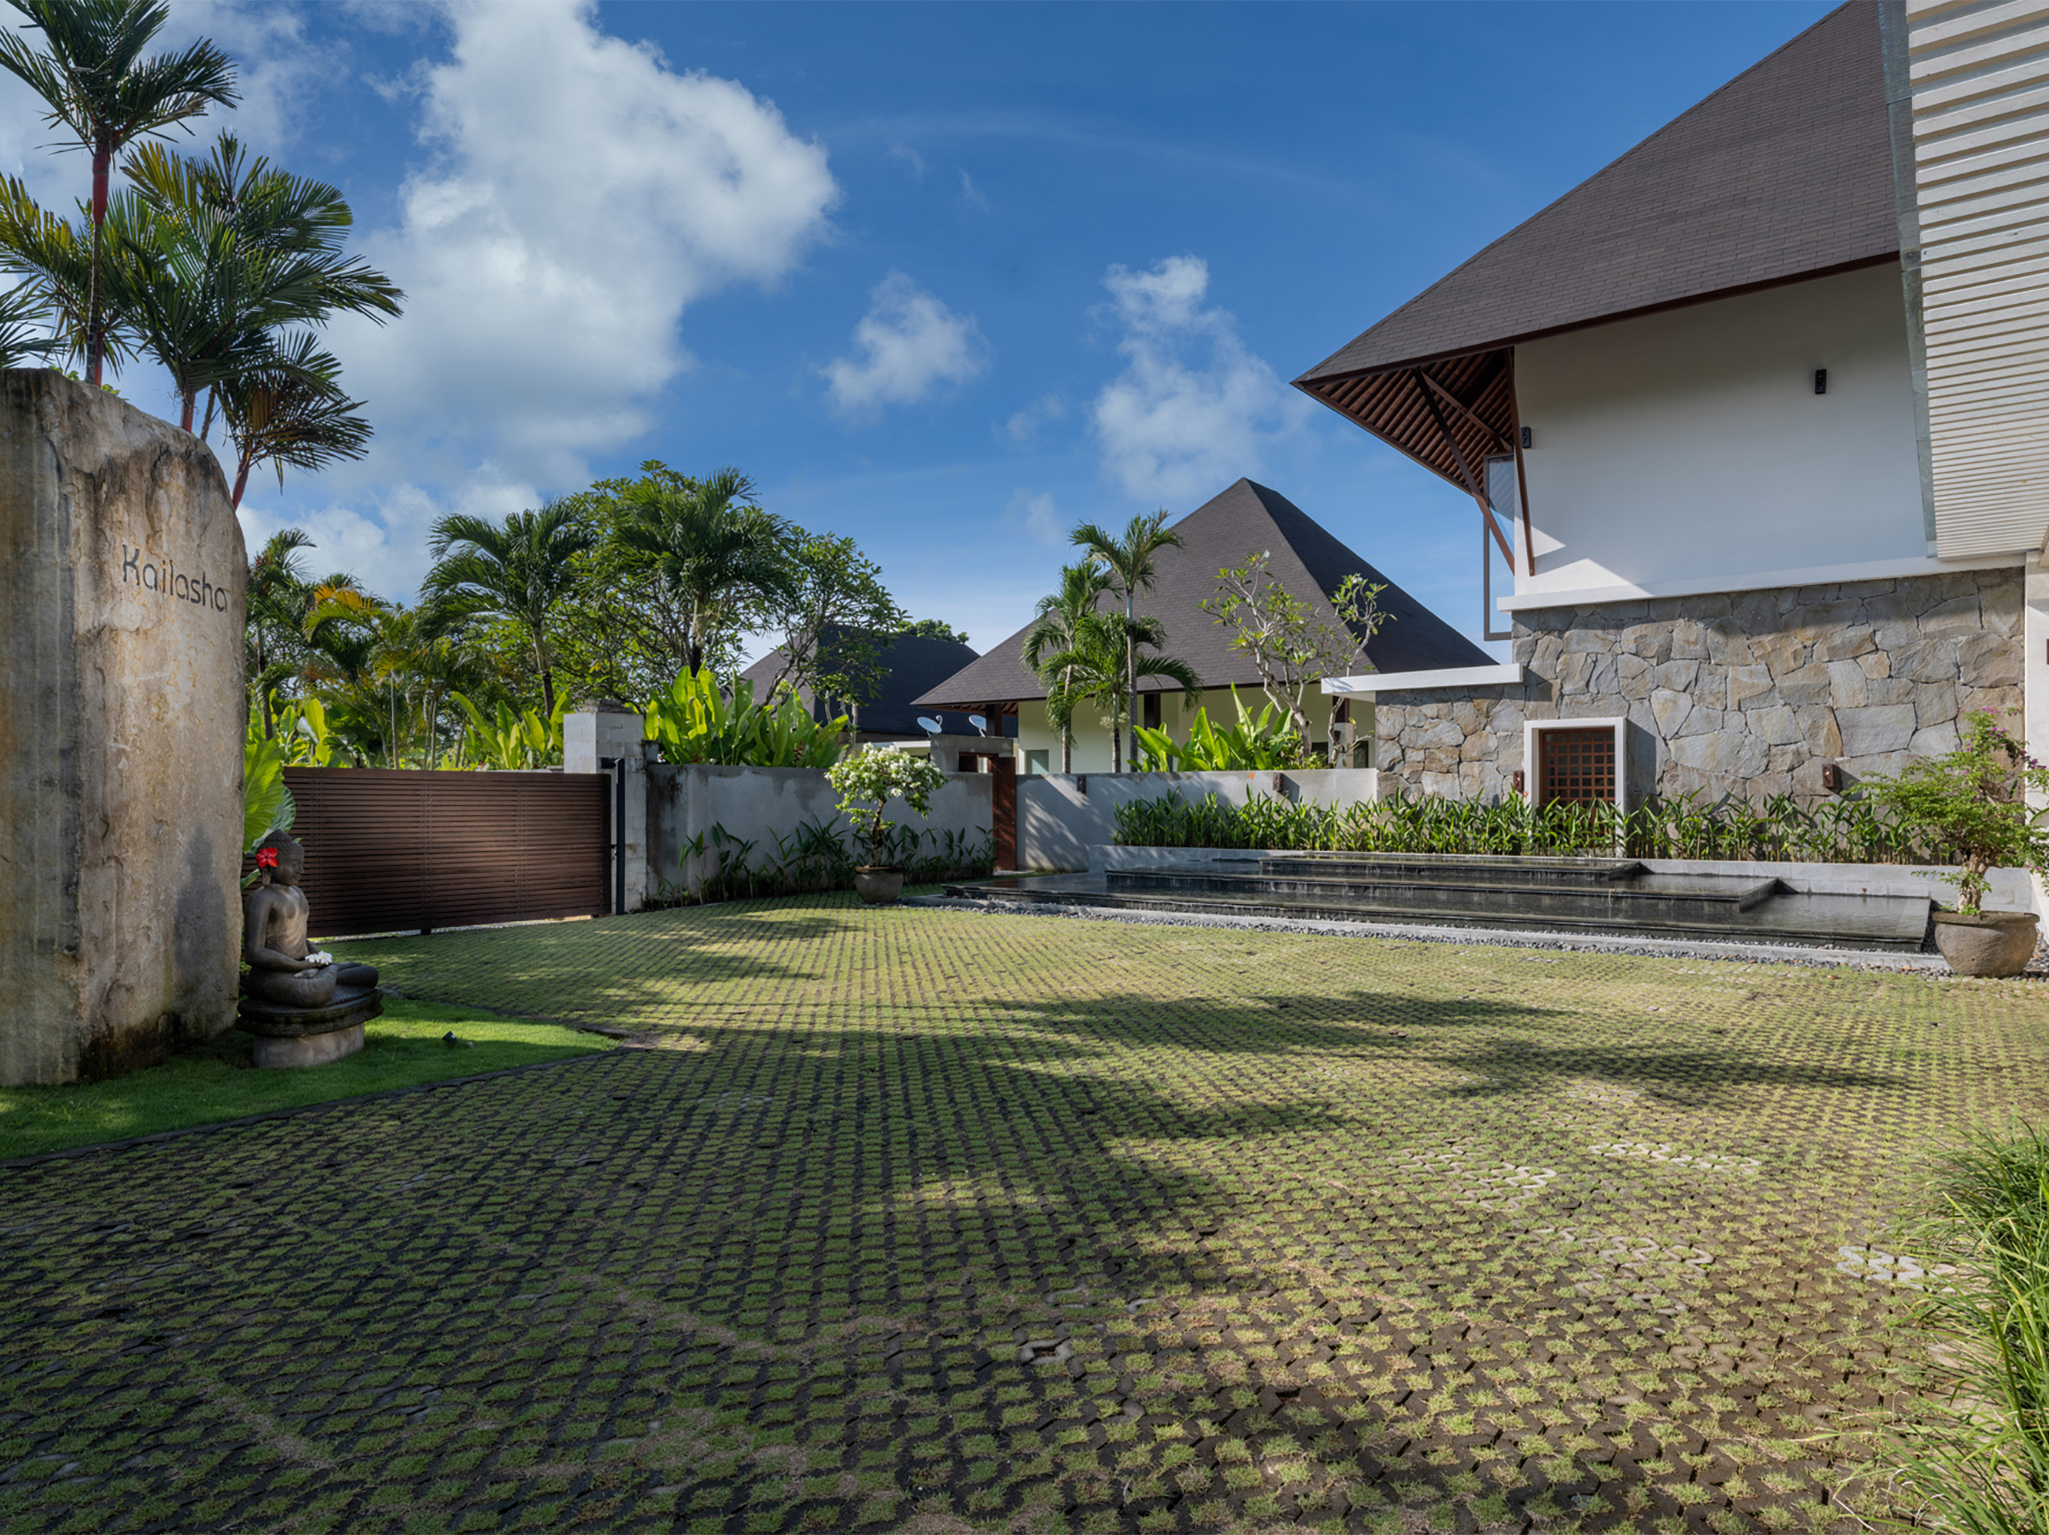 Villa Kailasha - Gate and parking - Villa Kailasha, Tabanan, Bali